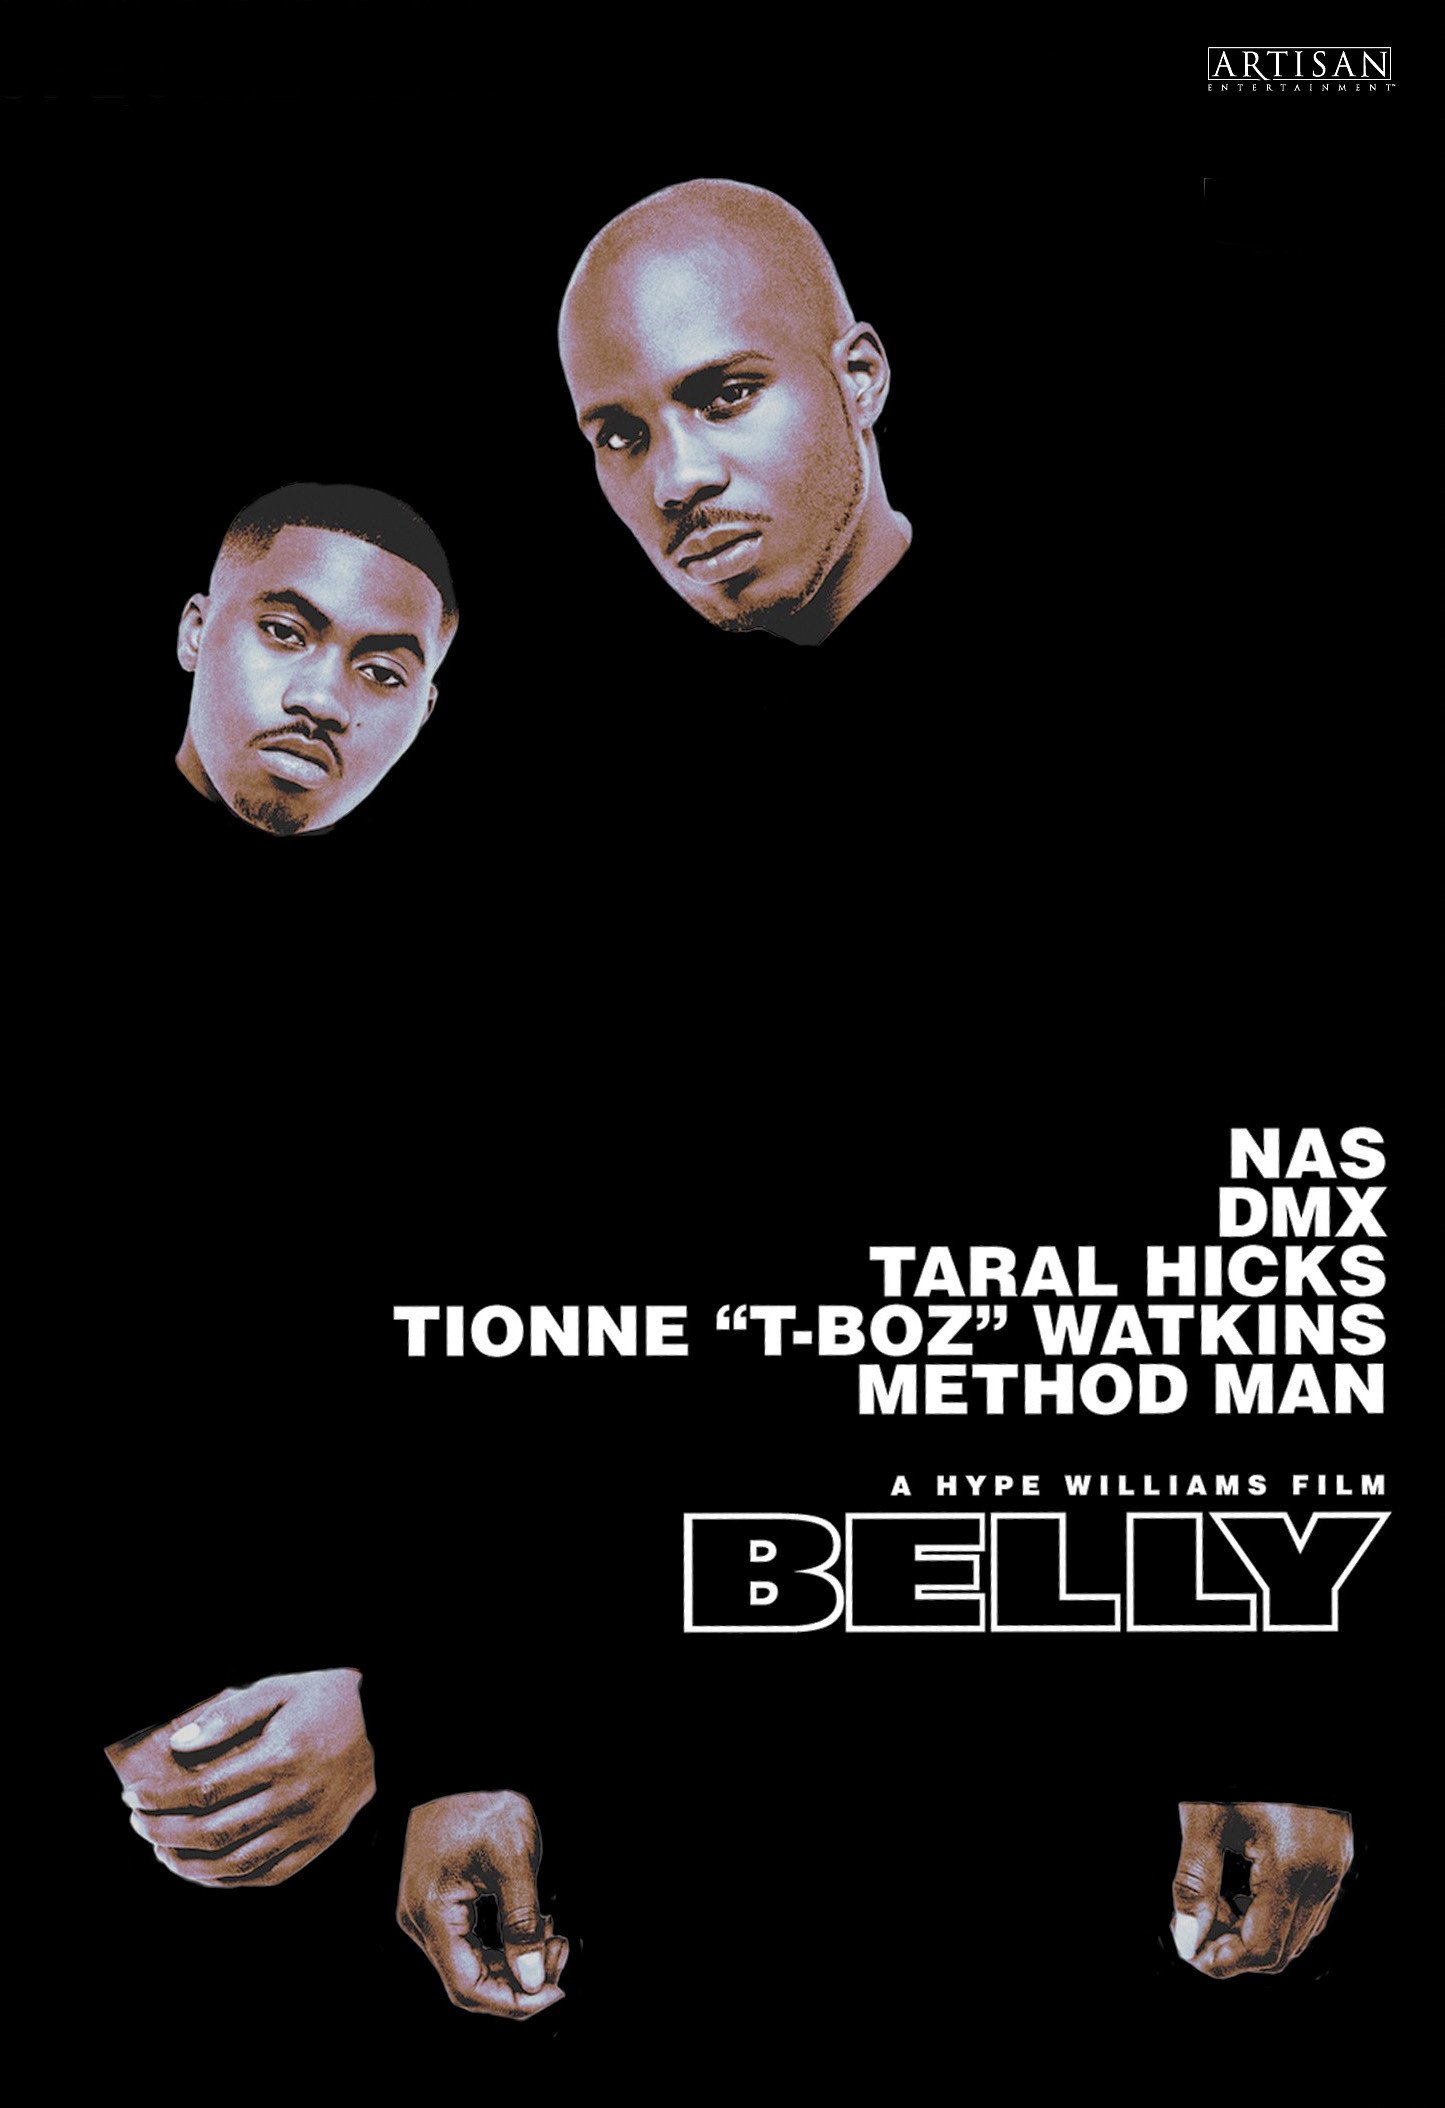 L'affiche du film Belly